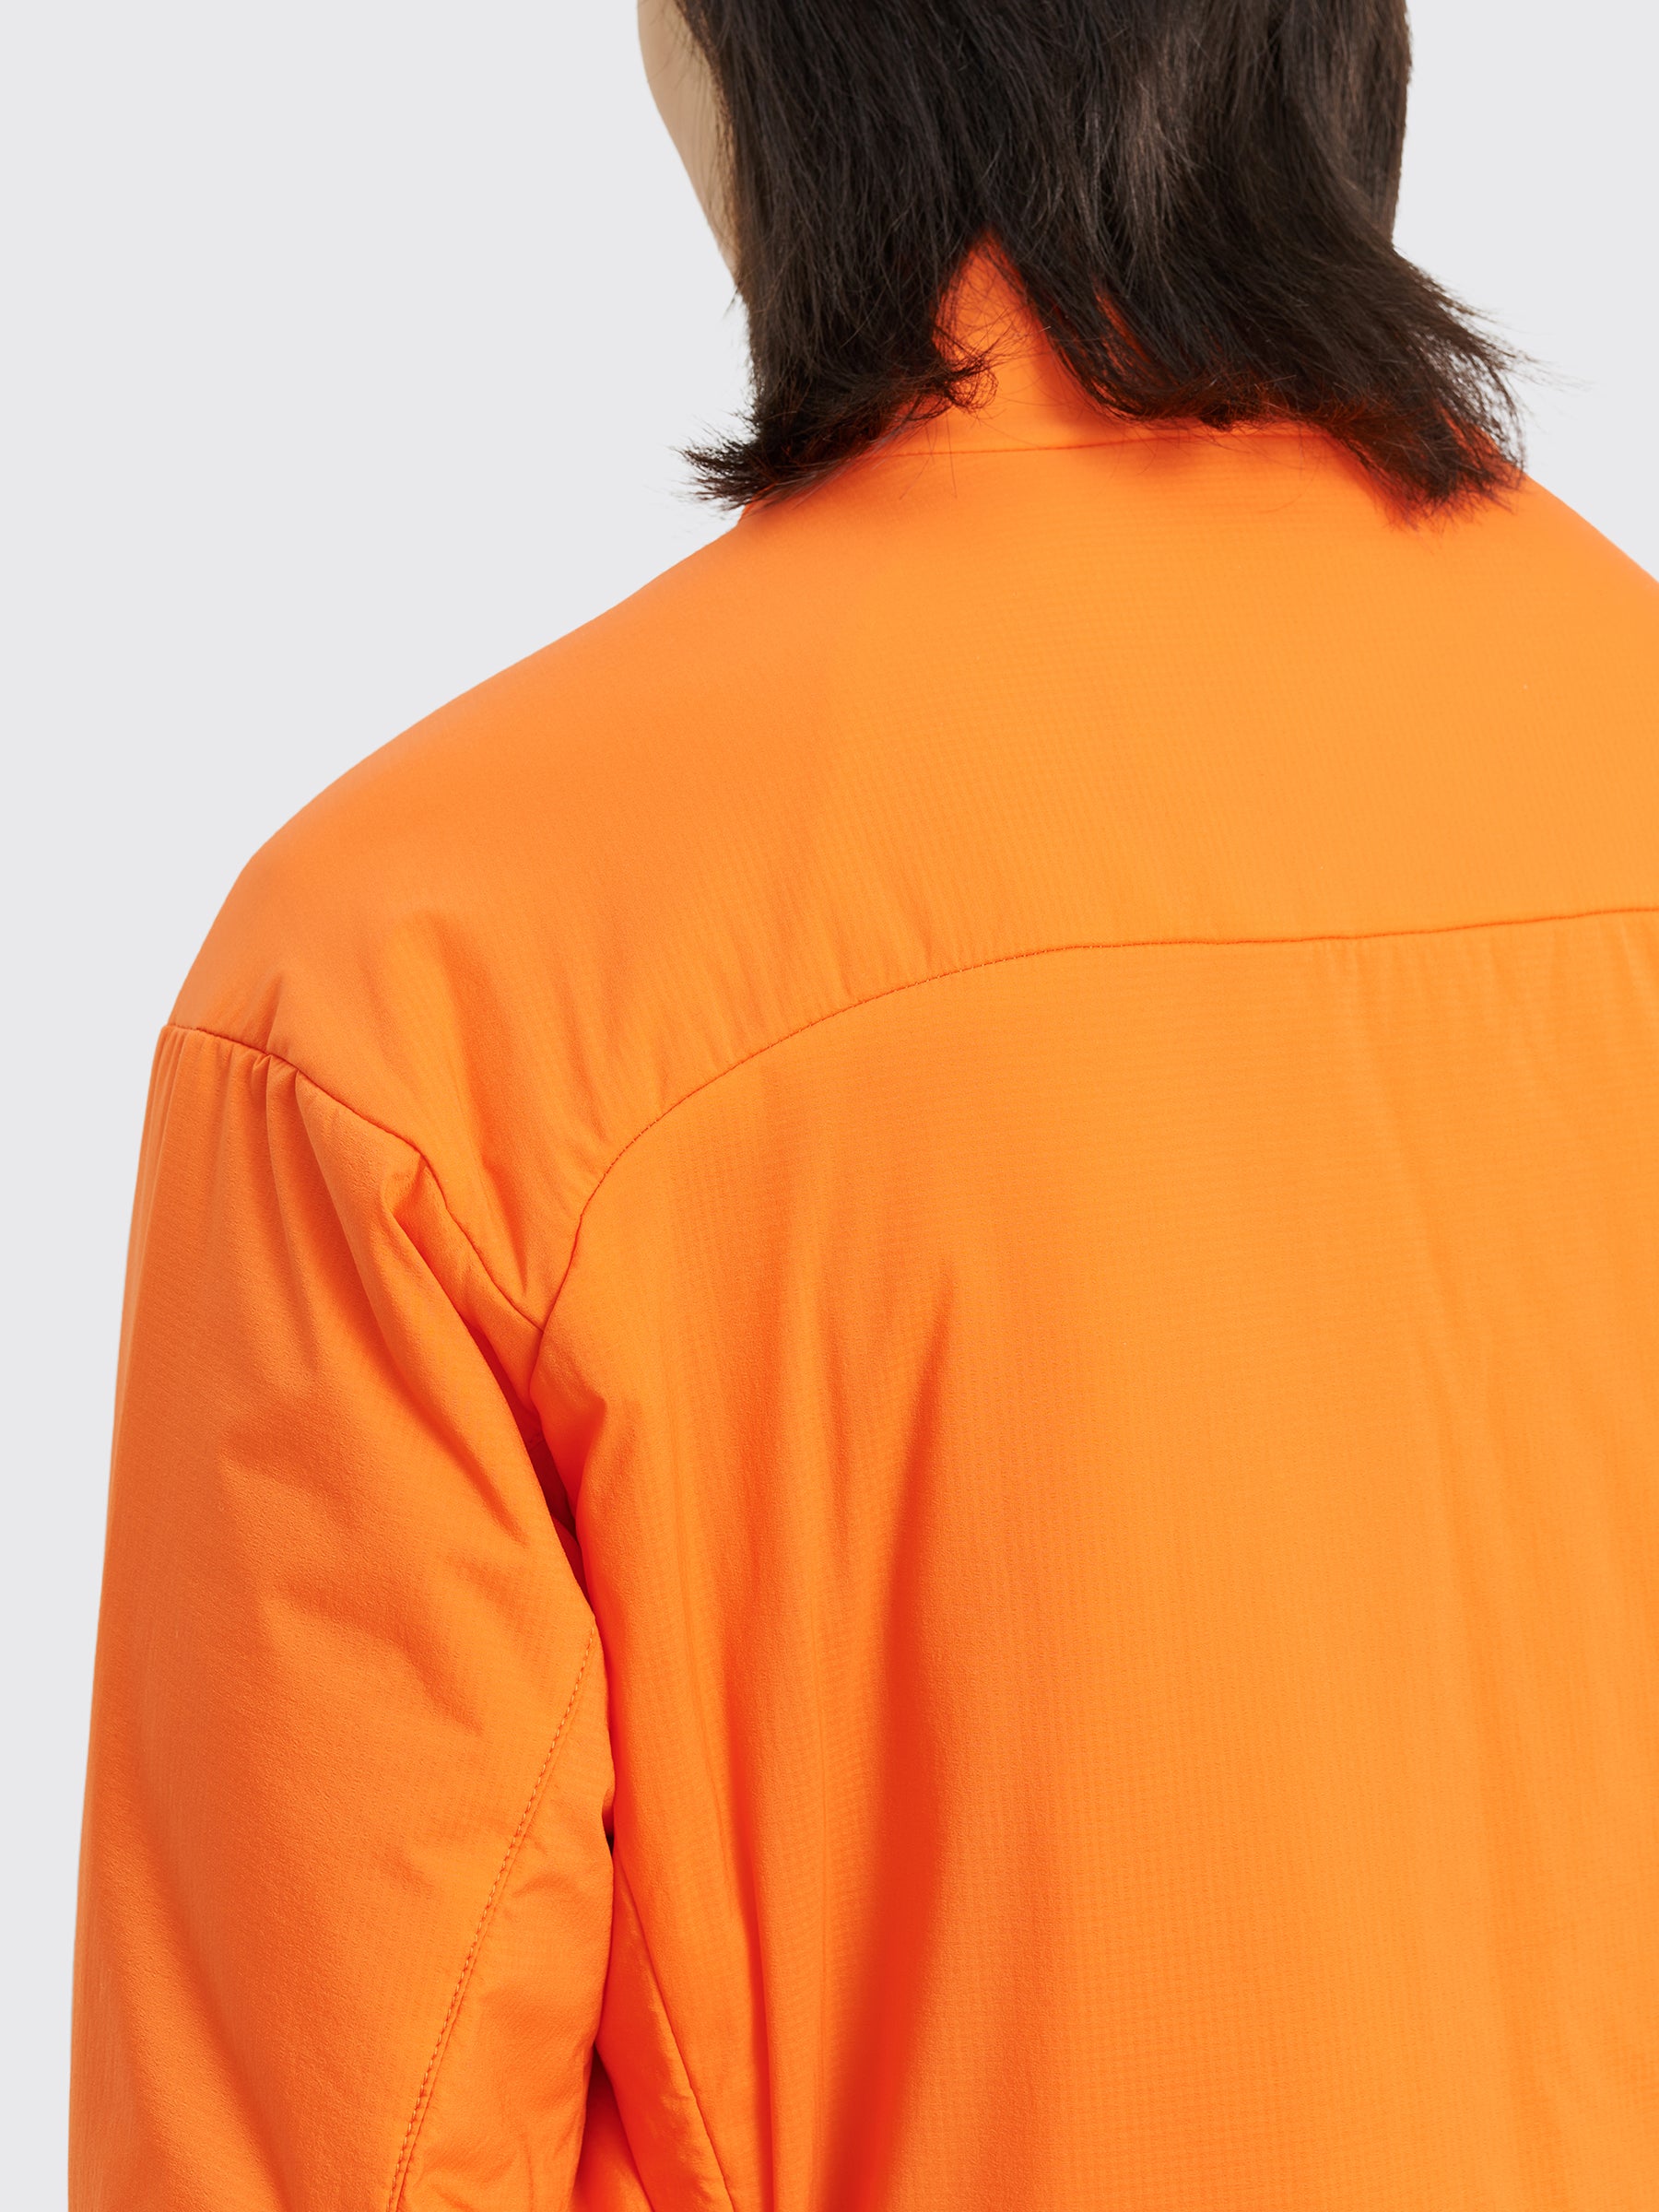 Adsum Yogi Jacket Orange